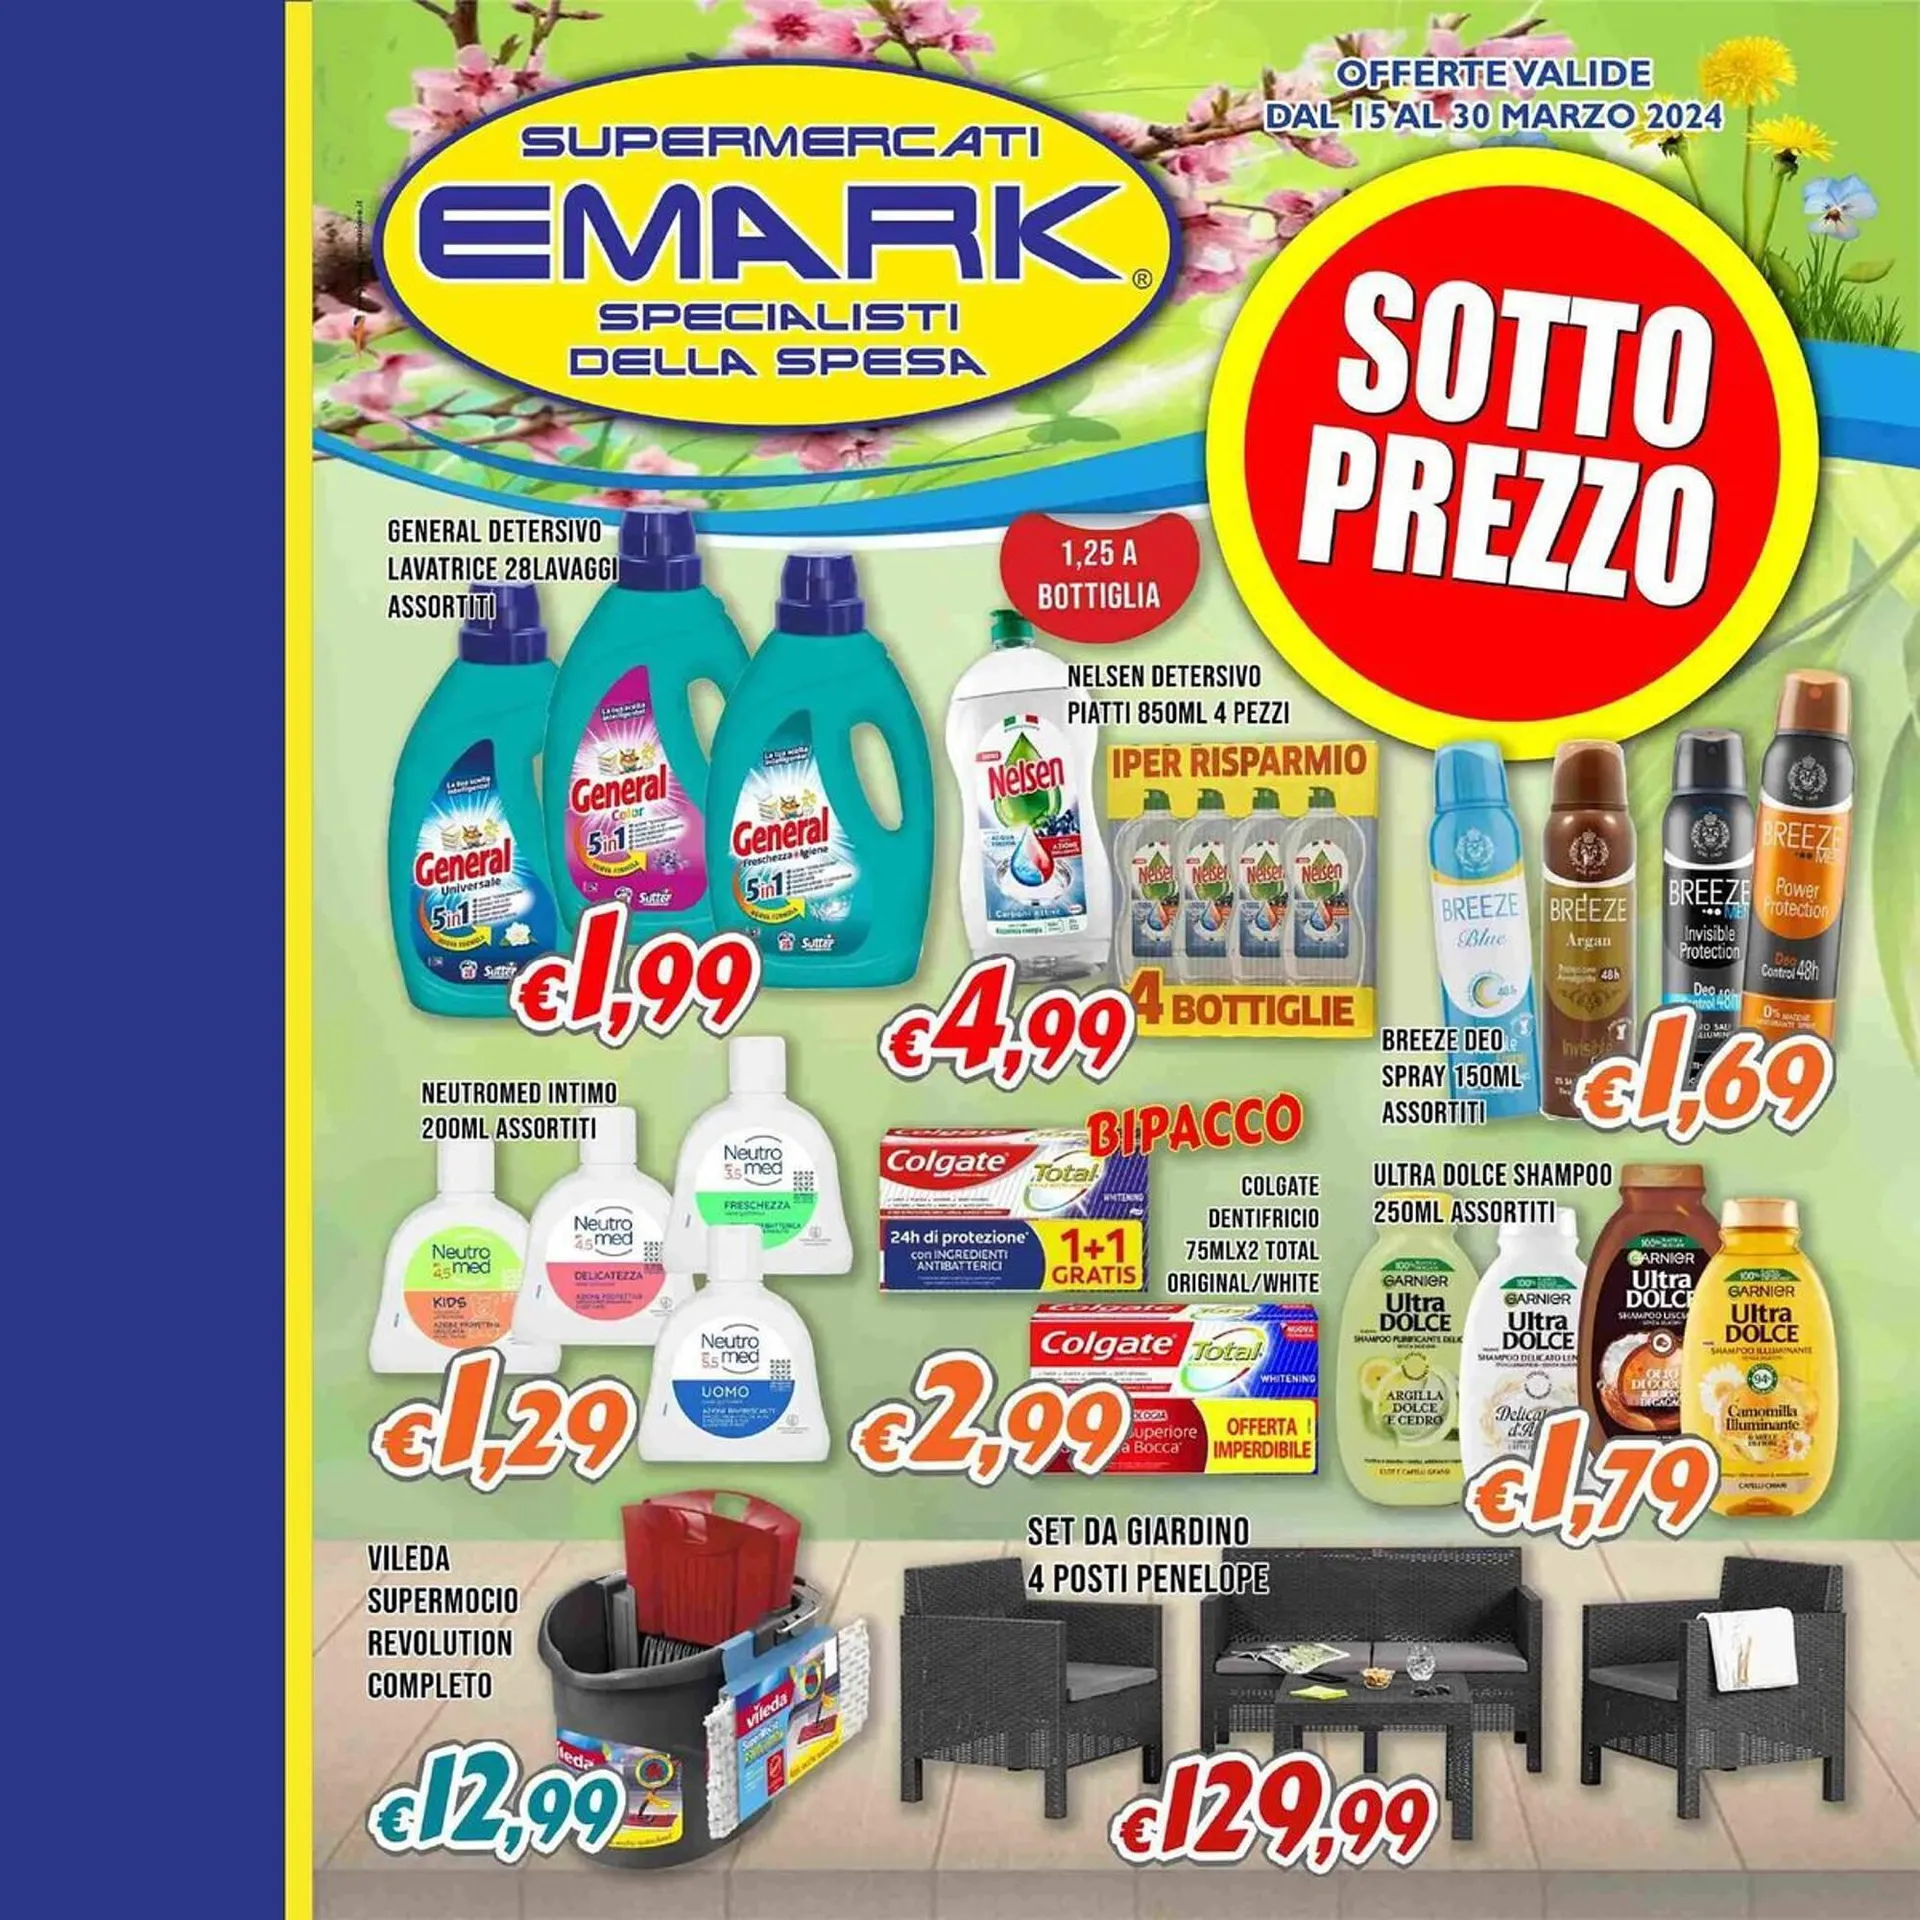 Volantino Supermercati Emark da 15 marzo a 30 marzo di 2024 - Pagina del volantino 1